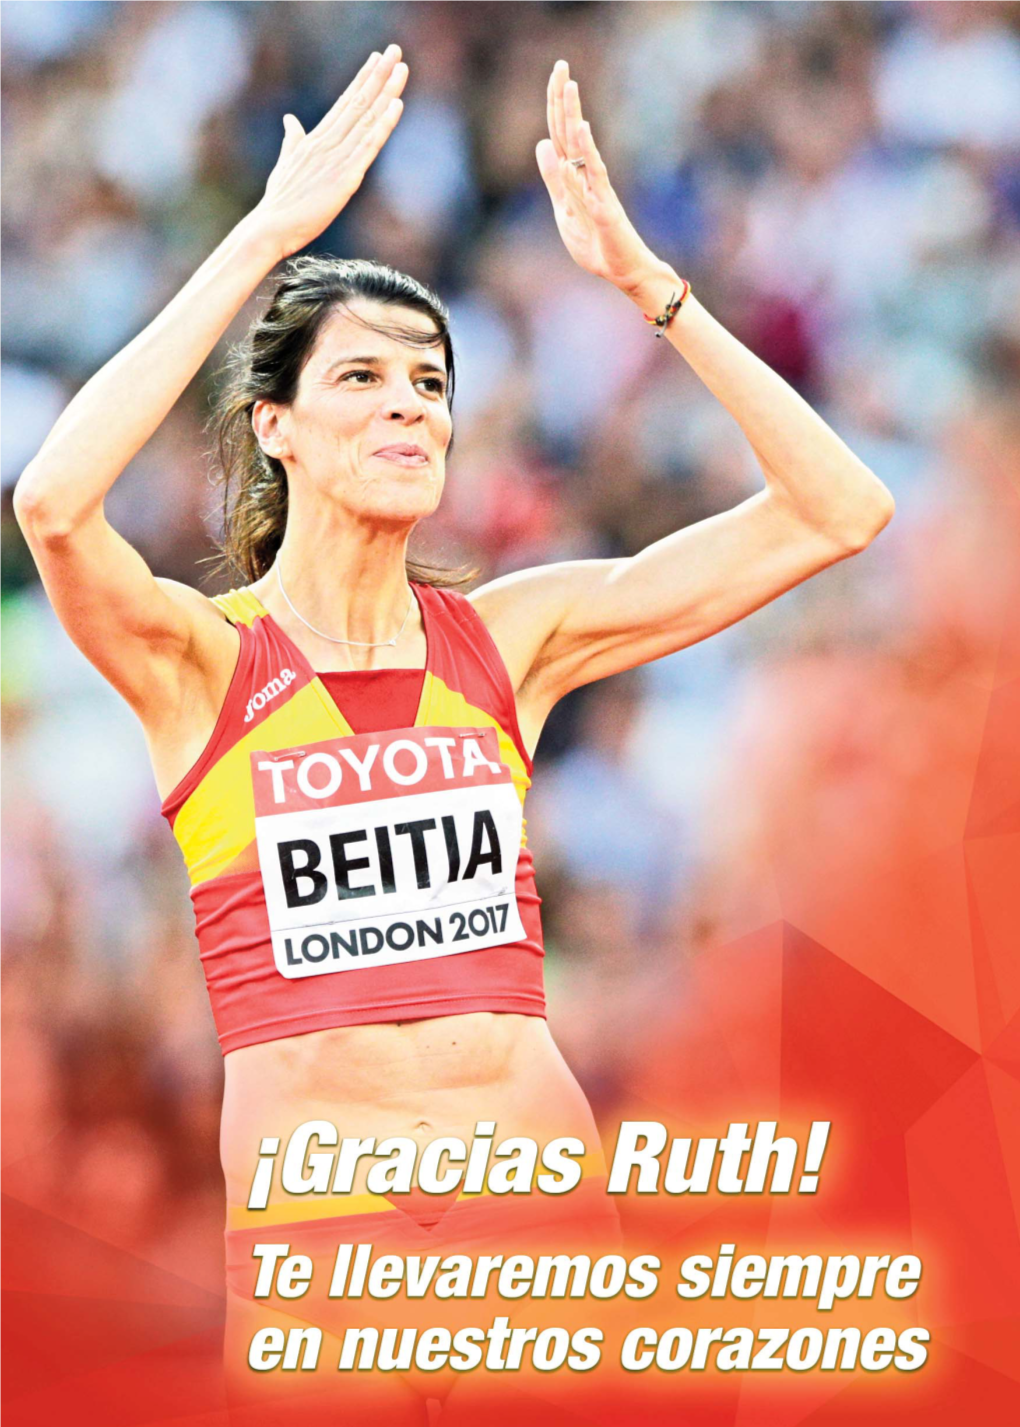 Ruth Beitia - La Atleta Española Más Grande De Todos Los Tiempos